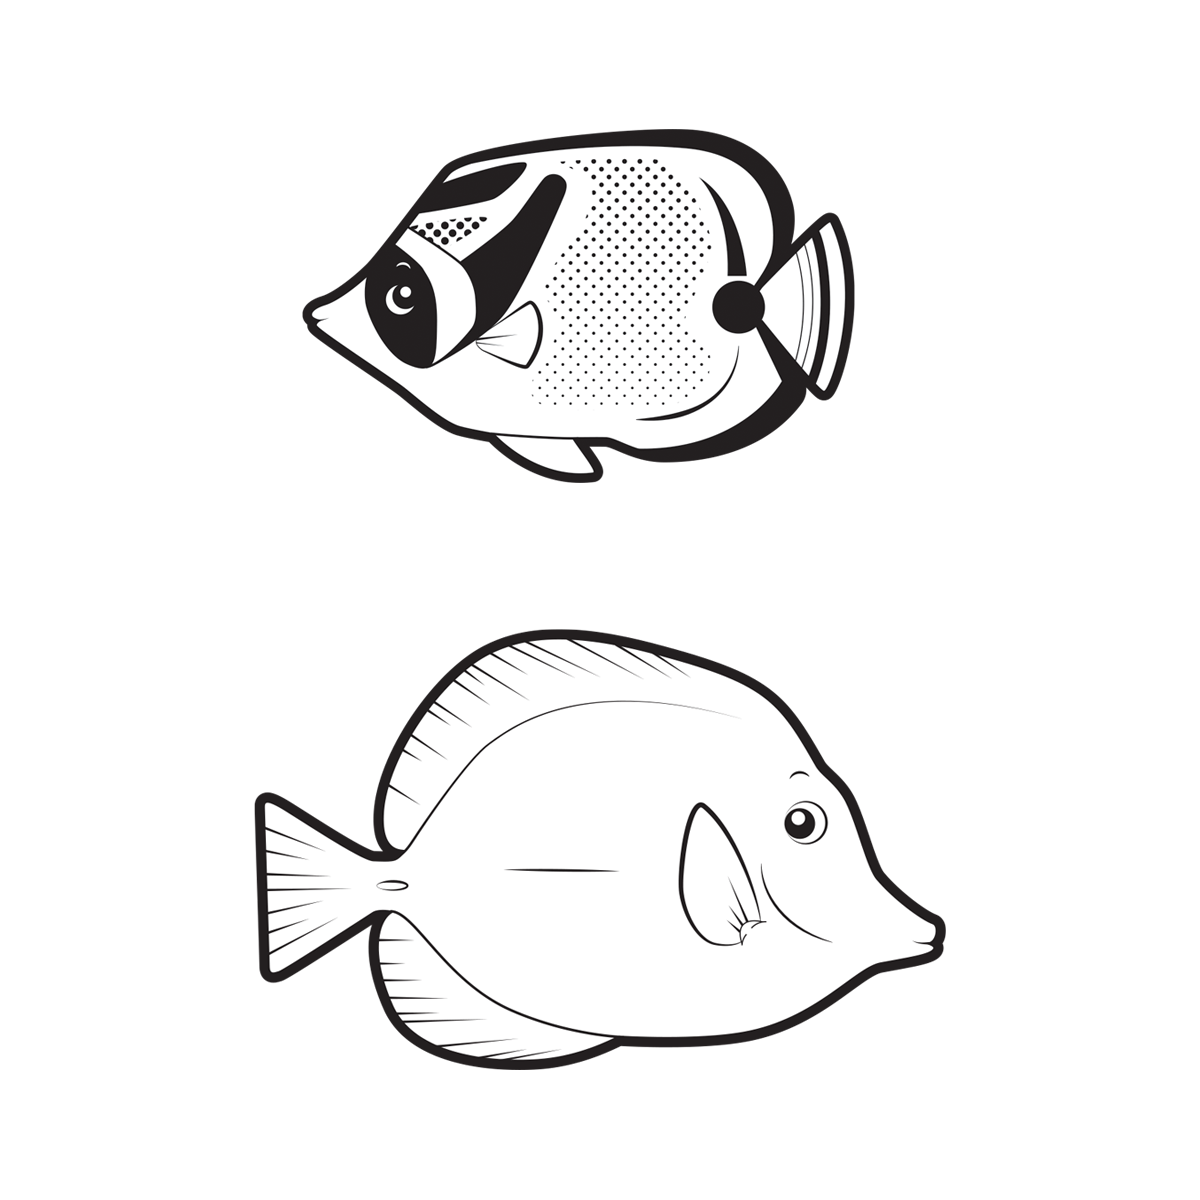 vector cartoon fish sea creatures